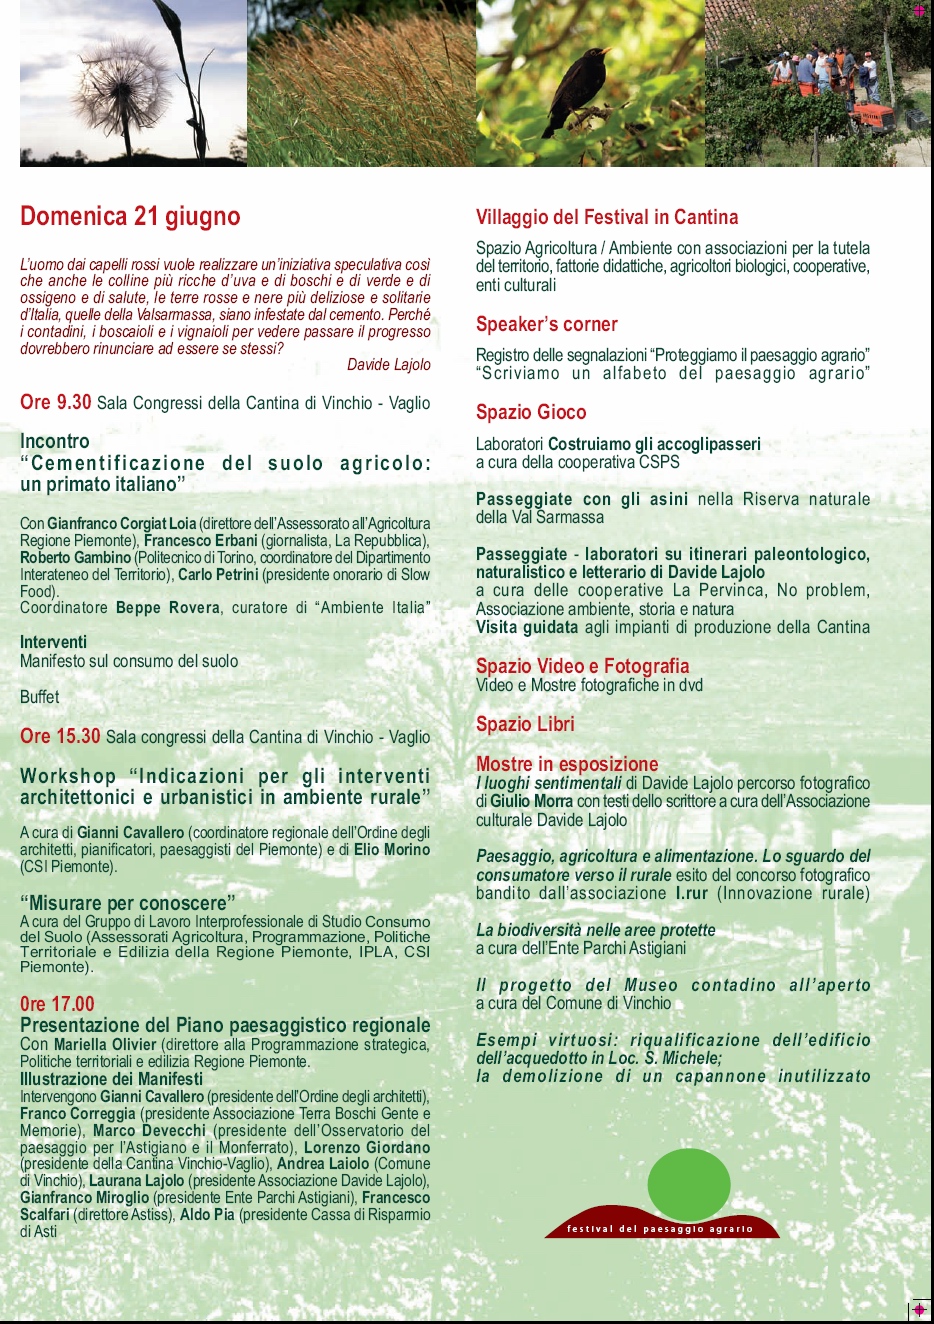 Programma del Festival del paesaggio agrario di Vinchio d'Asti (Retro)